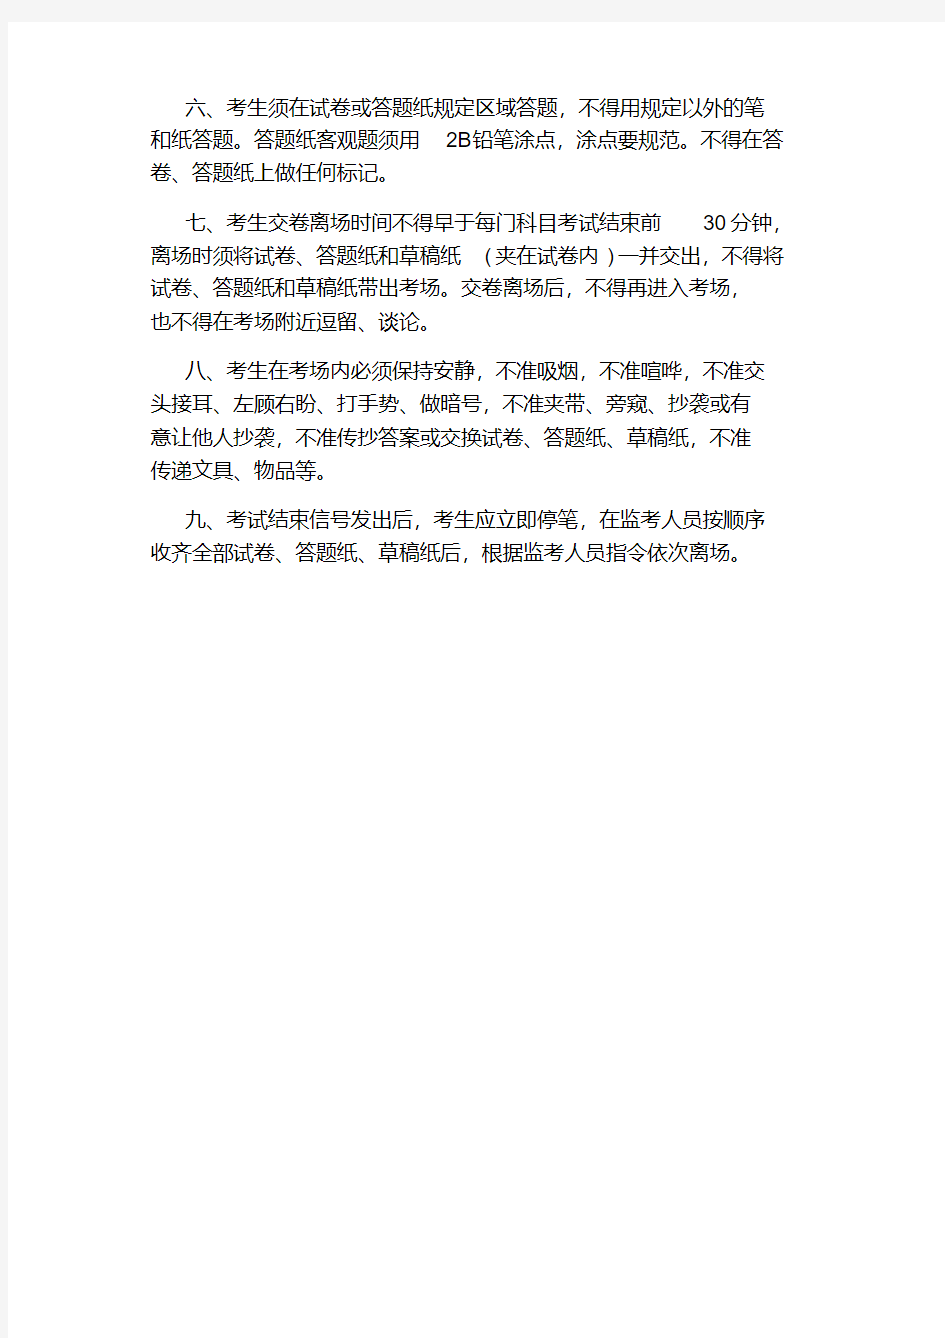 2020年上海高考考场规则.pdf